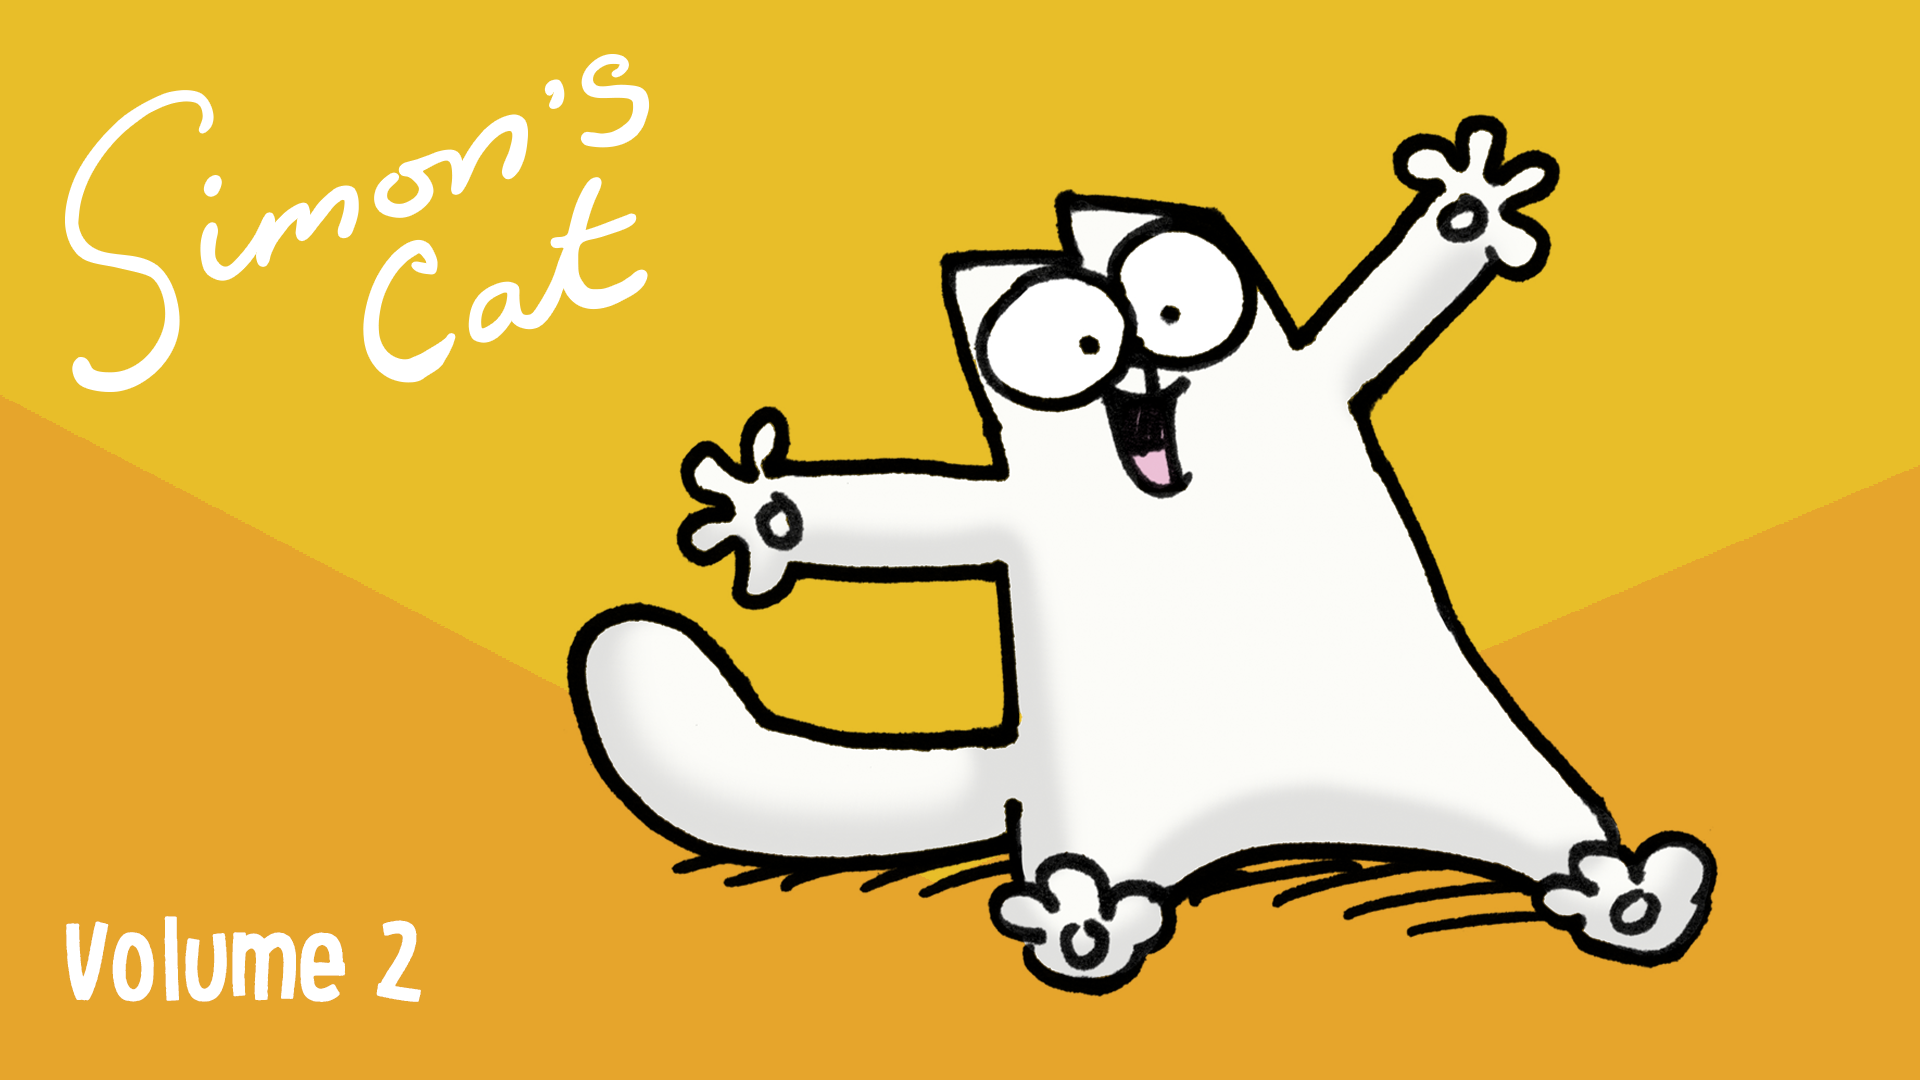 Watch Simon's Cat, Vol. 2amazon.com